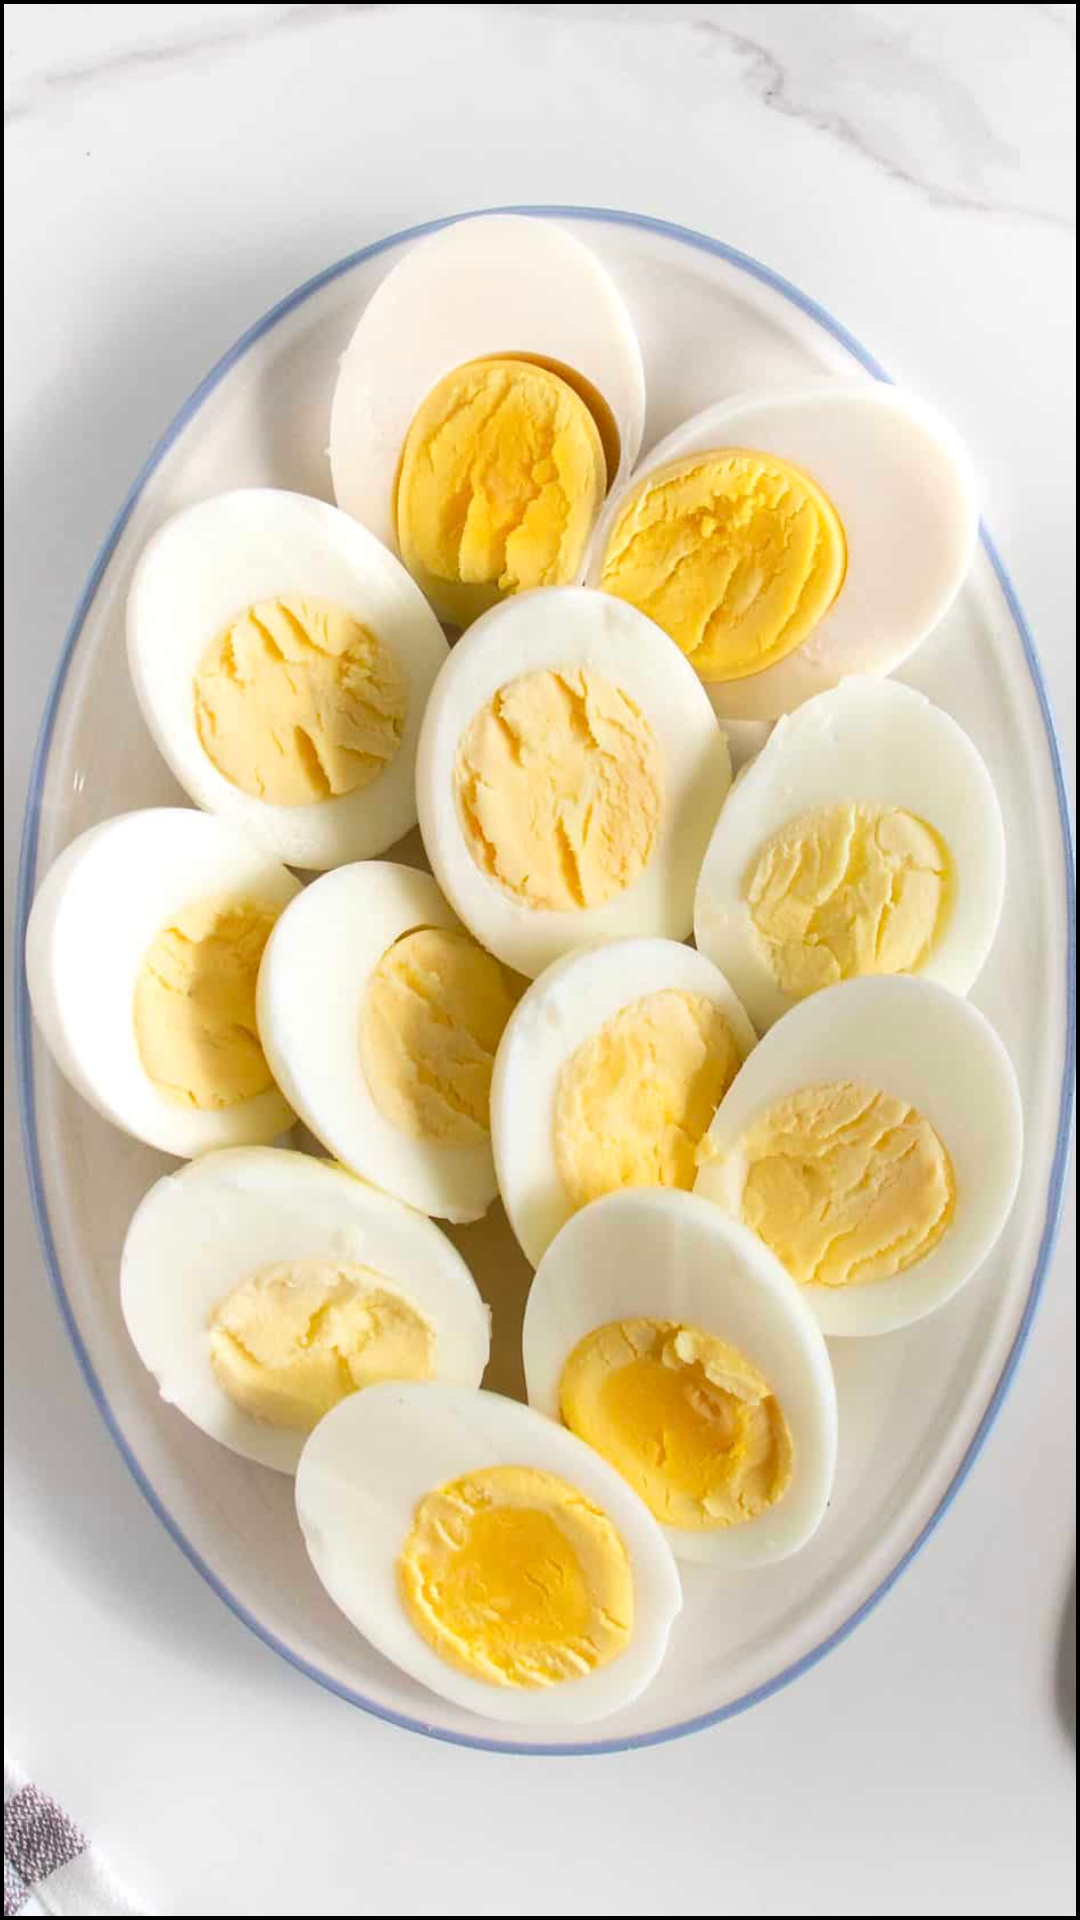 उबालने के इतने घंटे में खा लेना चाहिए अंडा, नहीं तो होगा नुकसान